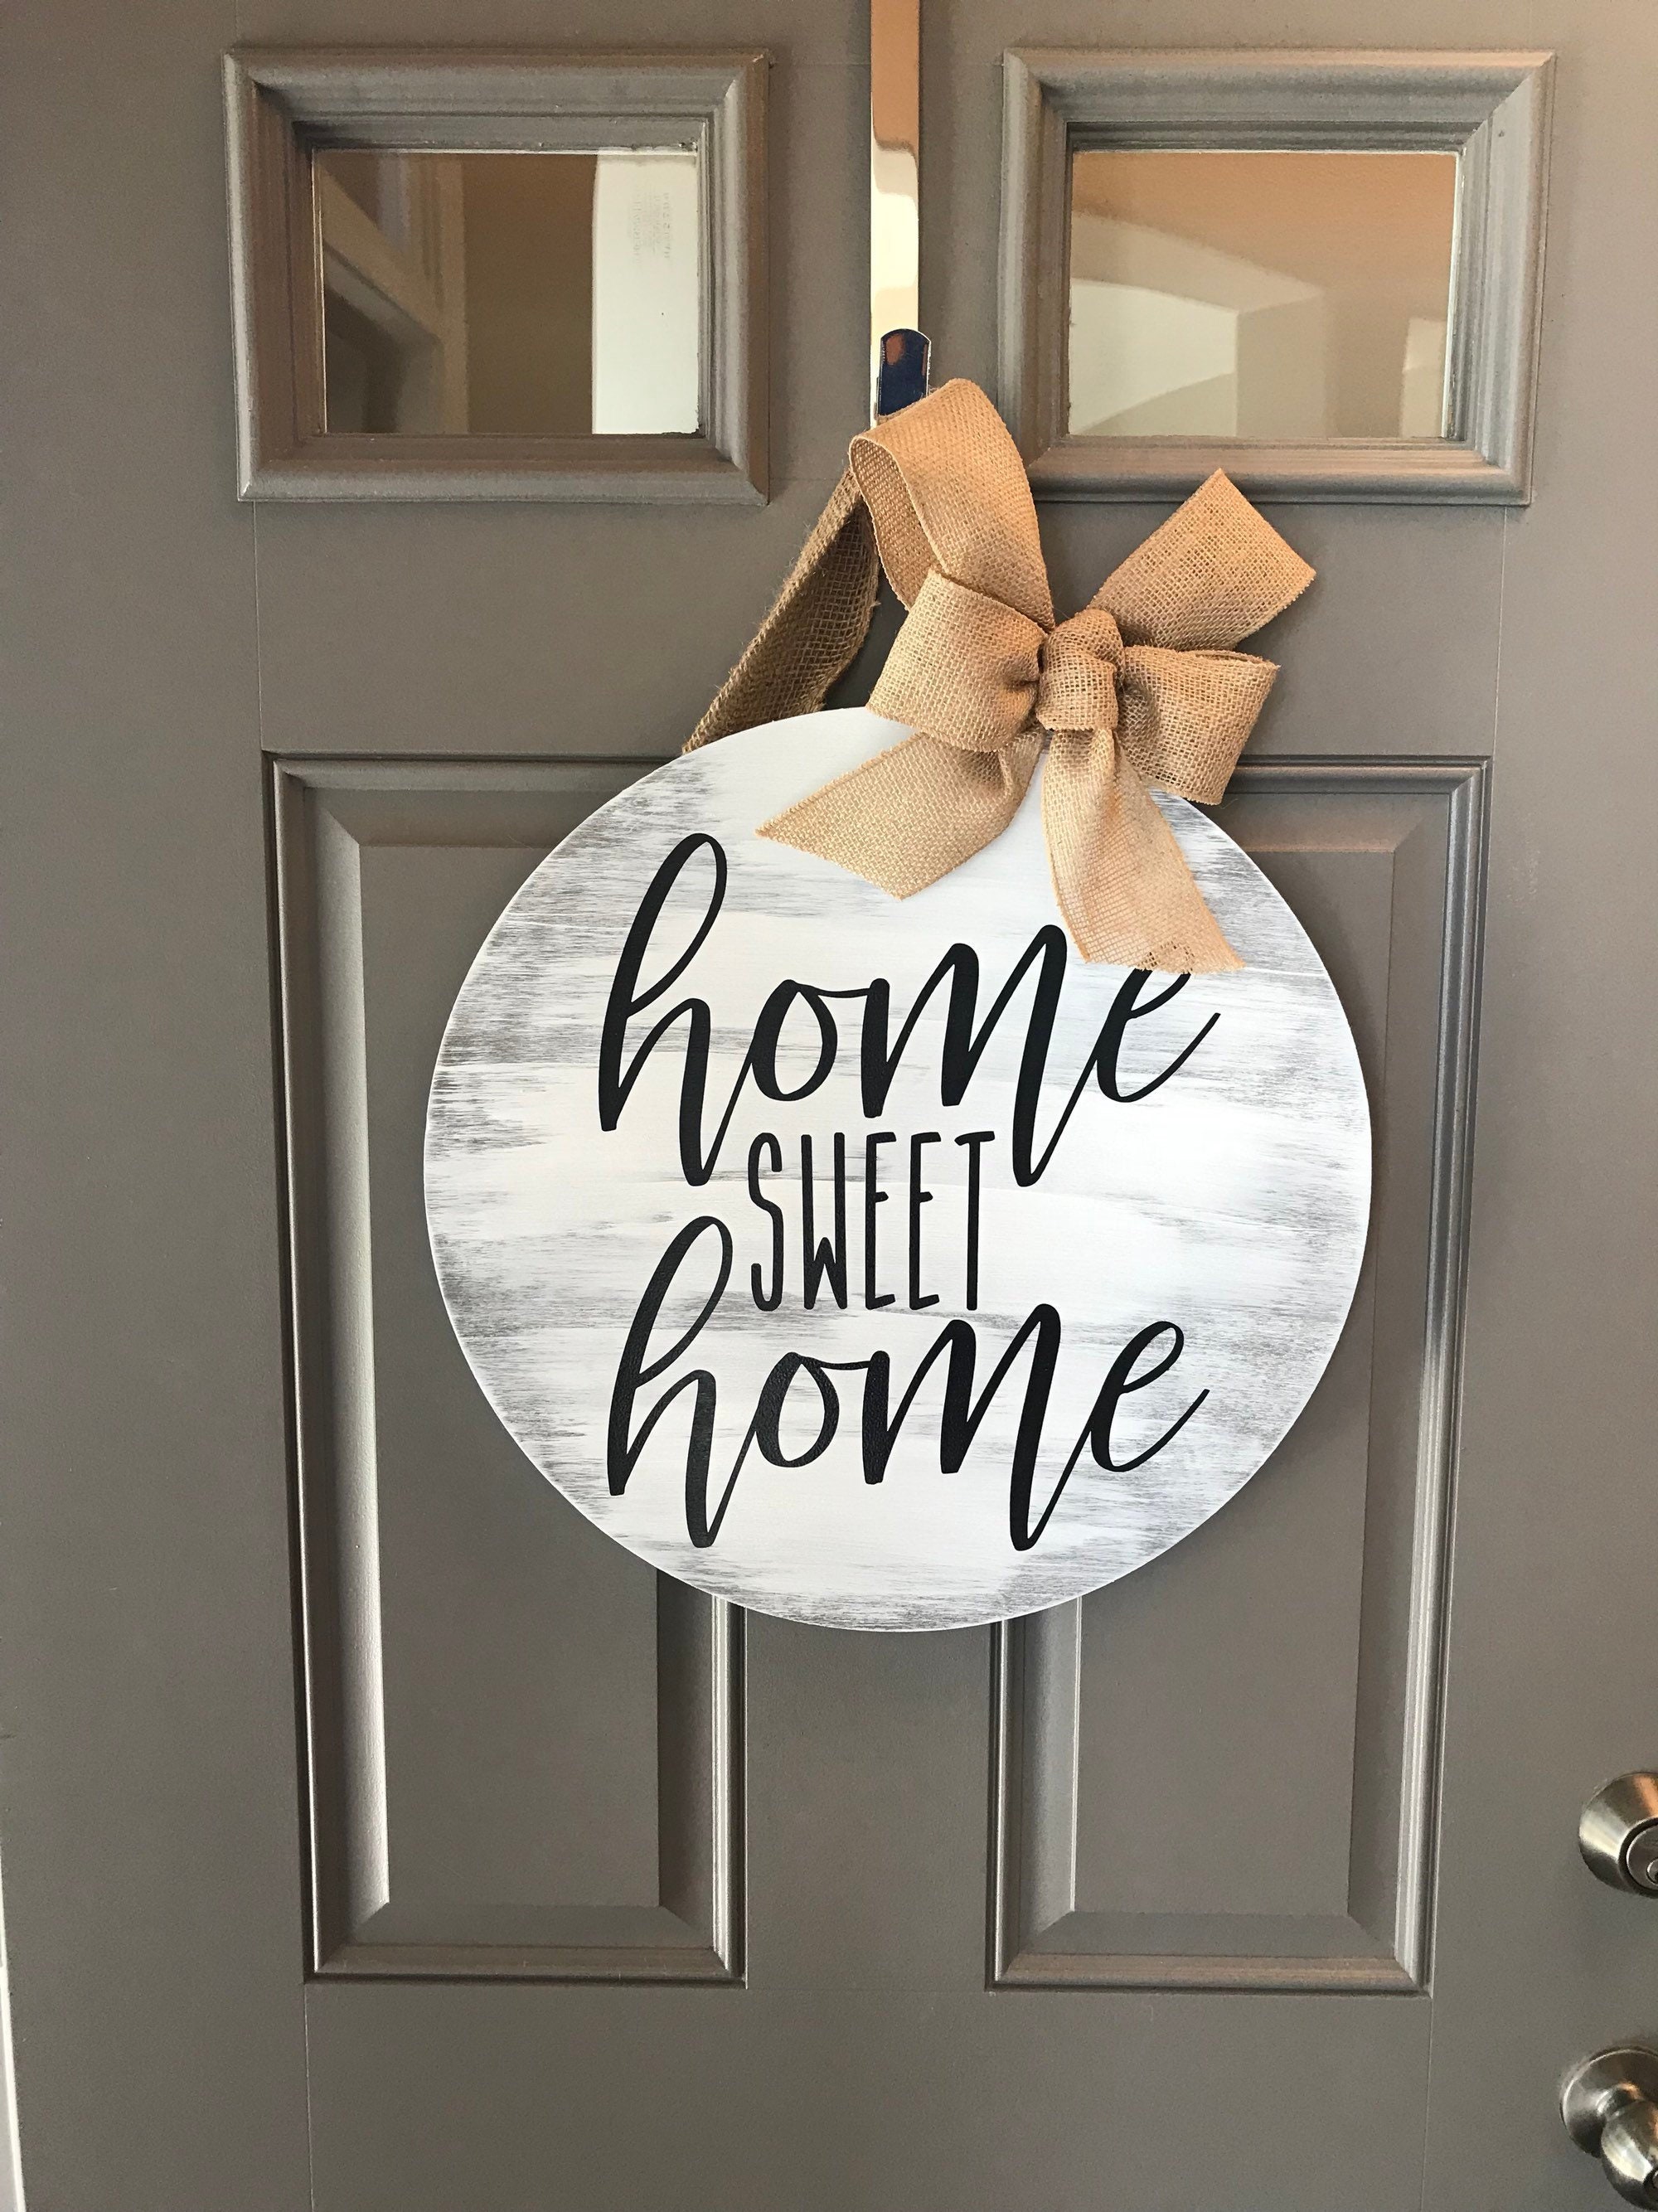 Home sweet home door hanger